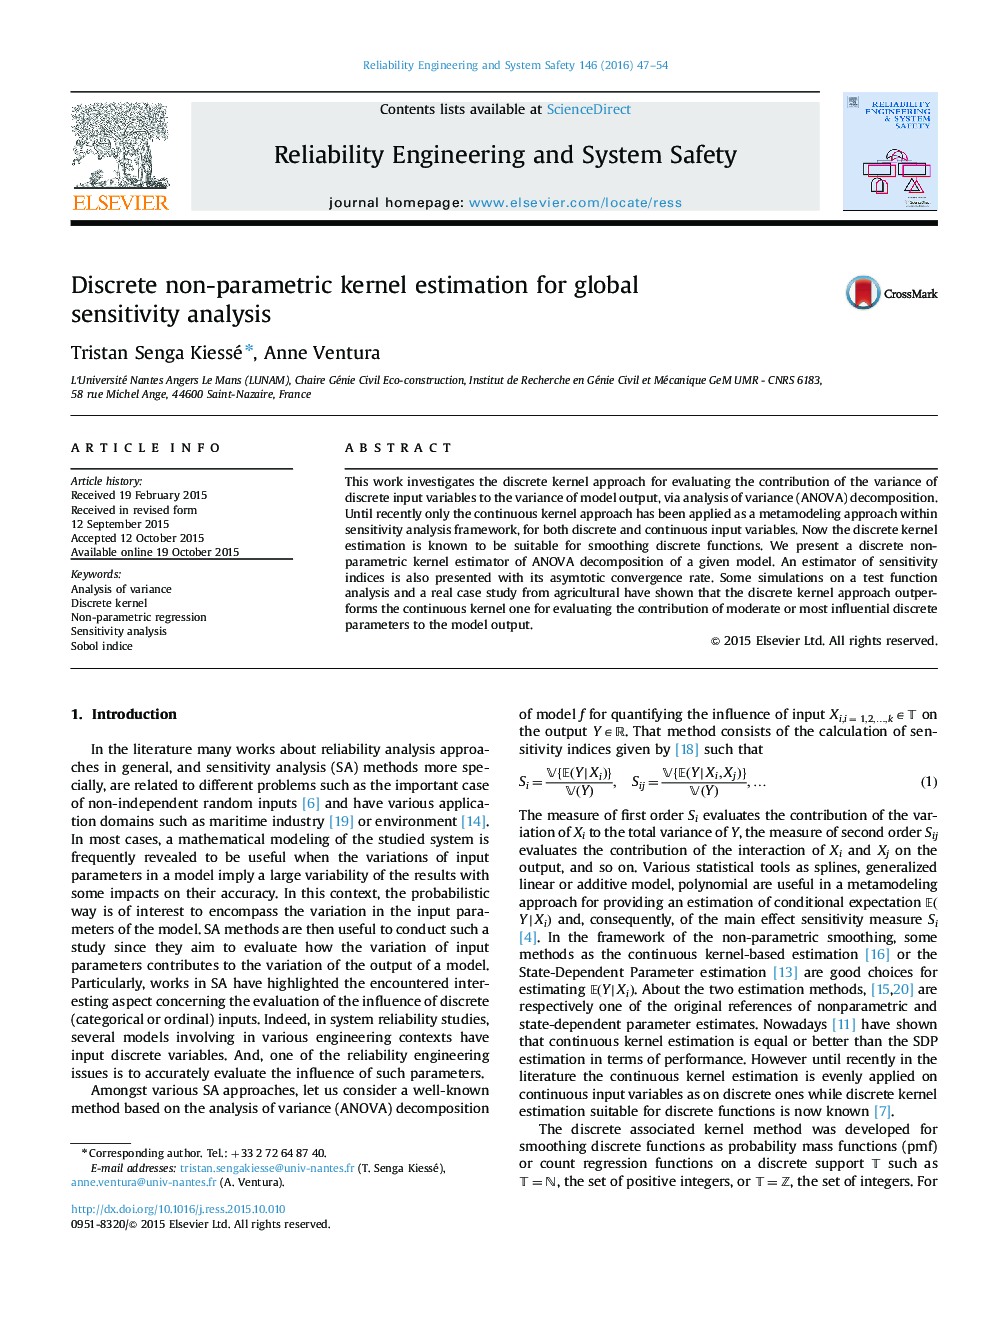 ارزیابی کرنل غیر پارامتری گسسته برای تحلیل حساسیت جهانی